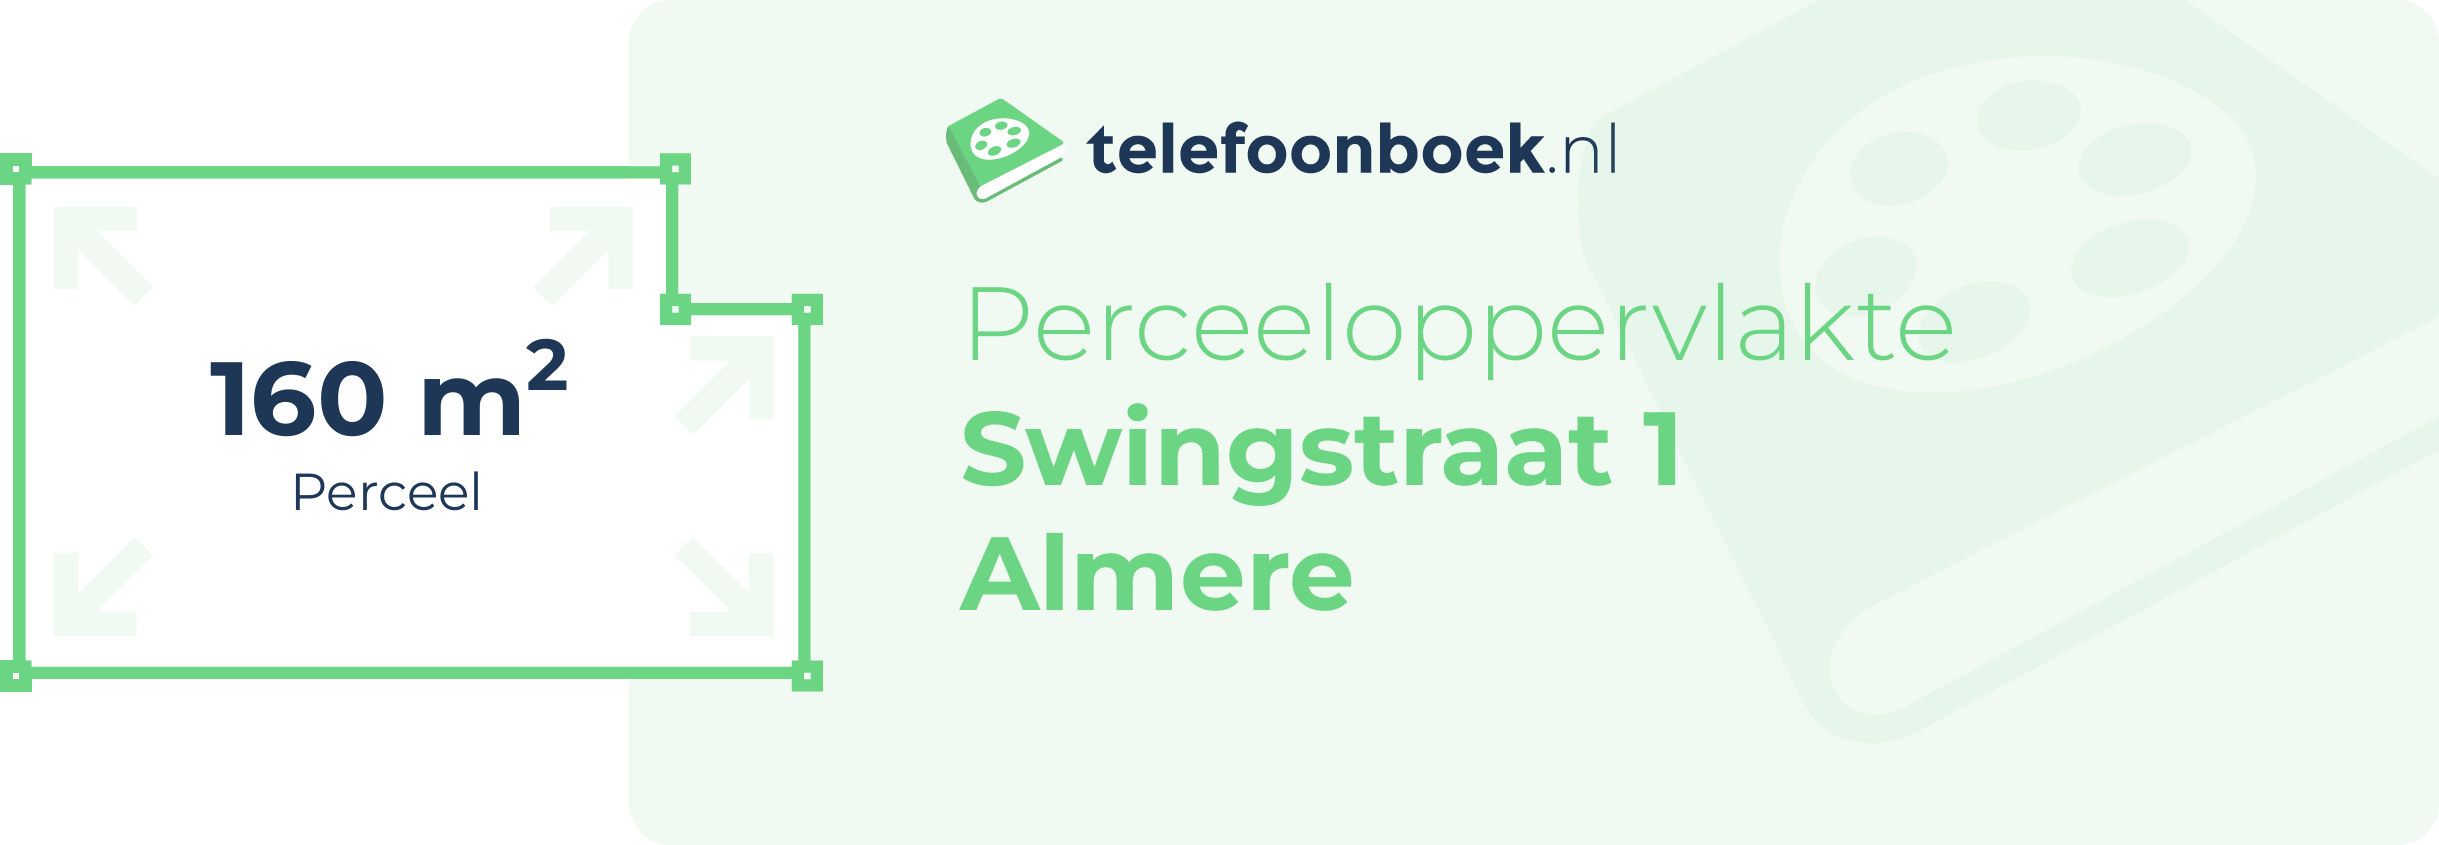 Perceeloppervlakte Swingstraat 1 Almere